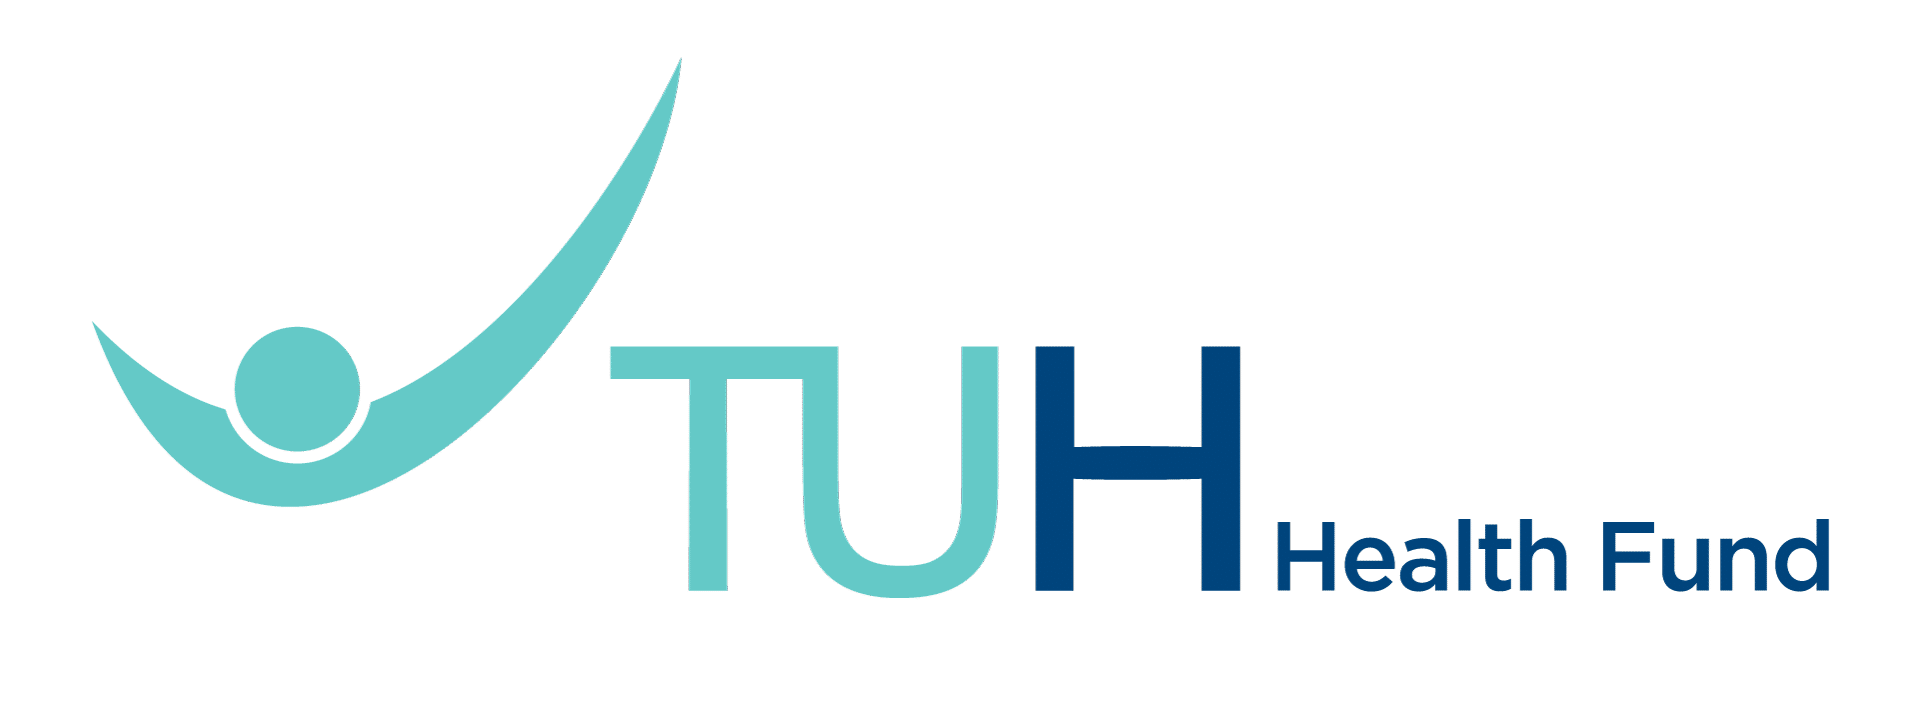 TUH Logo